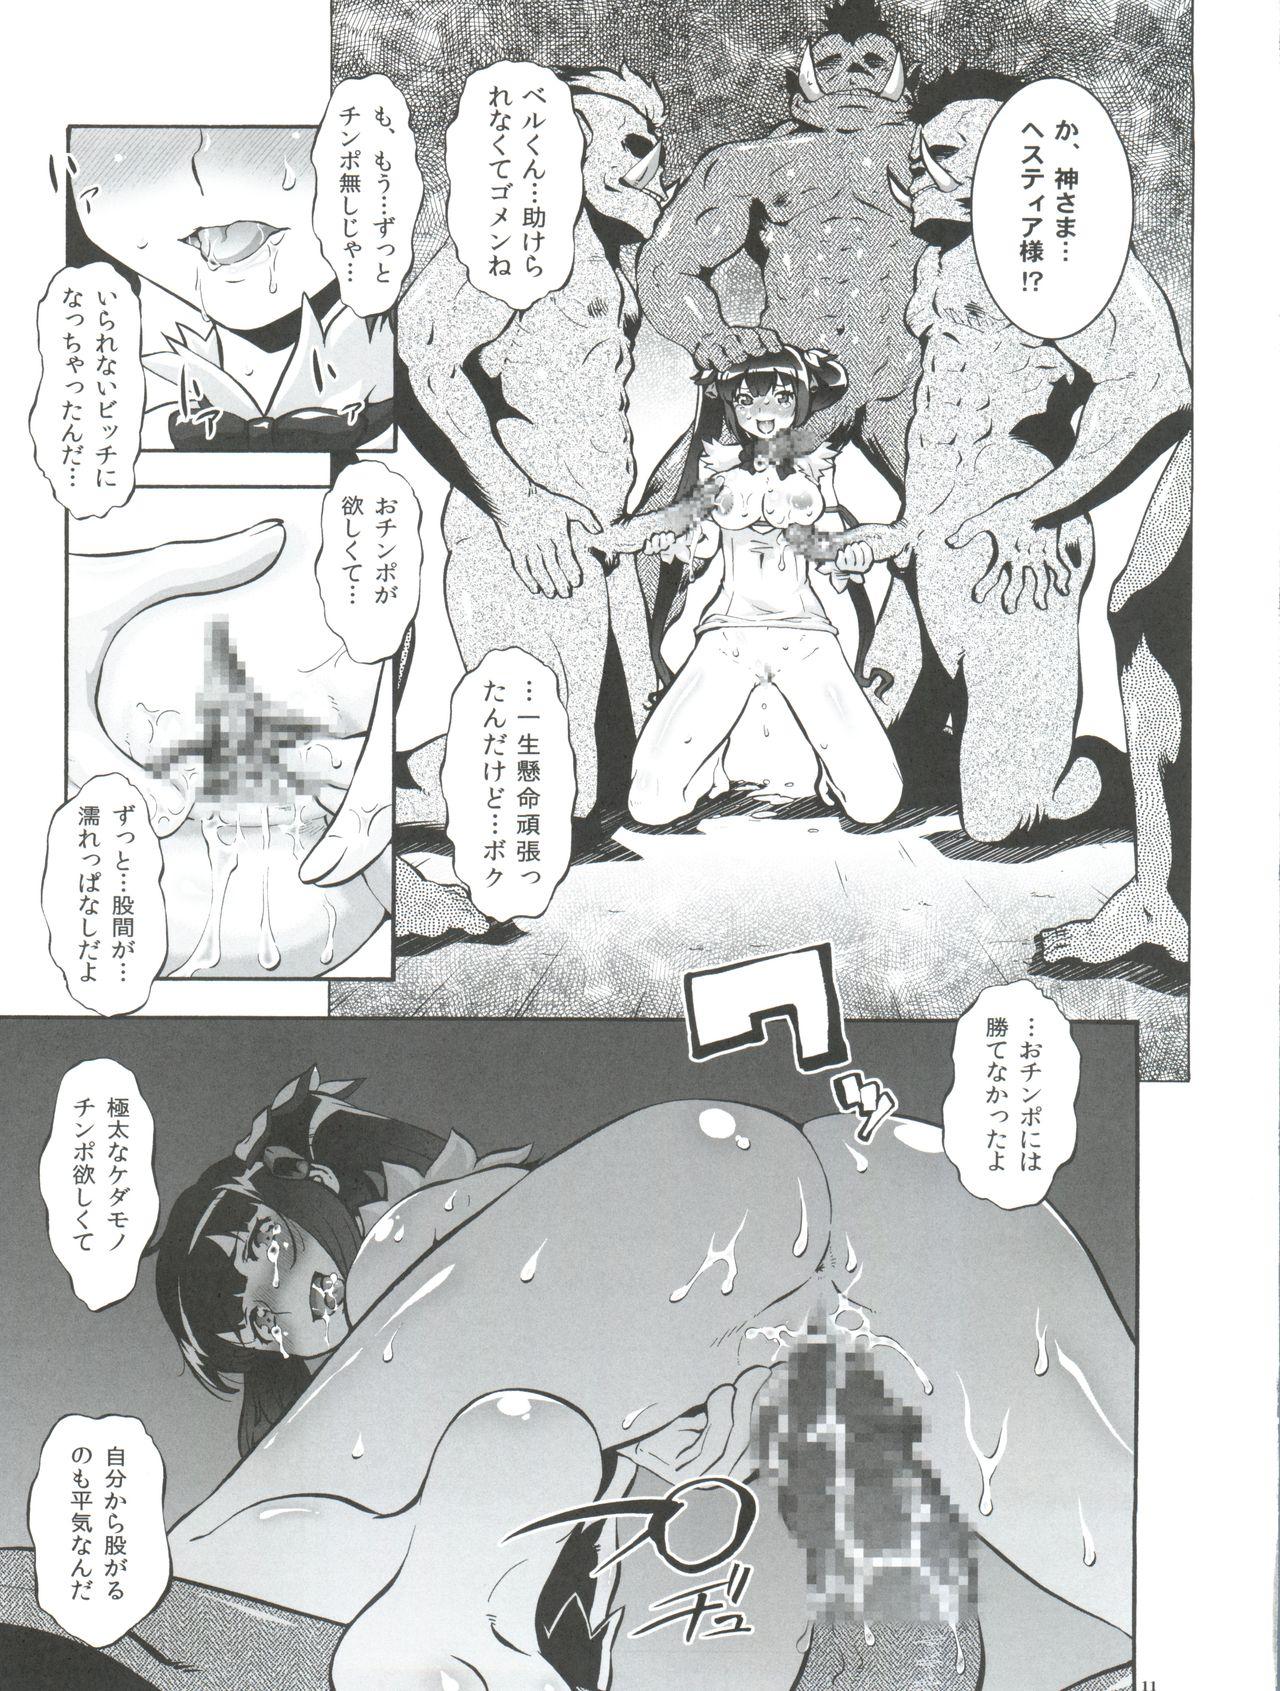 Ejaculation Danmachi - Dungeon ni deai o motomeru no wa machigatteiru darou ka Sem Camisinha - Page 11